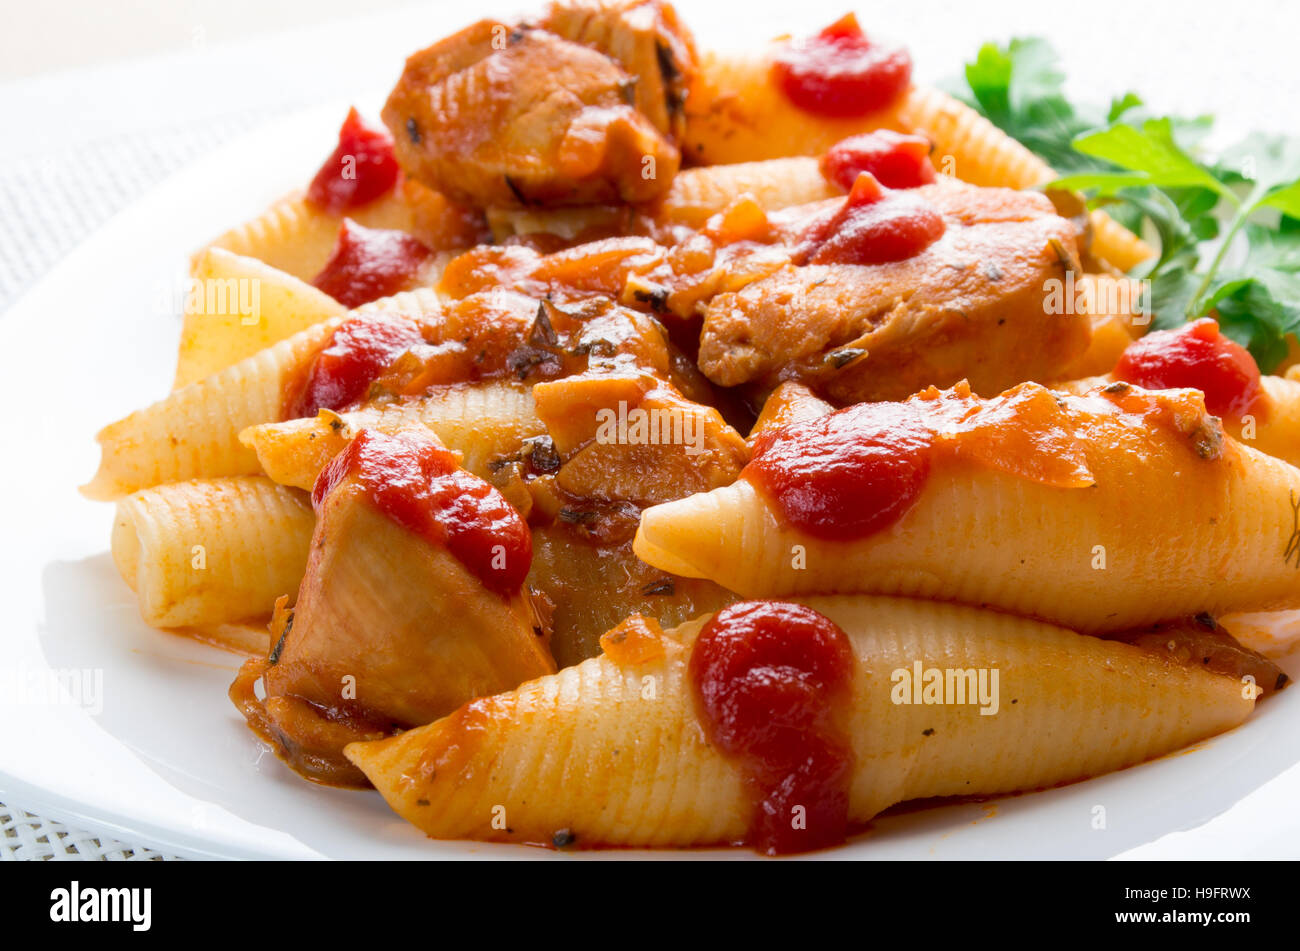 Partie du fragment de la viande de dinde et pâtes conchiglioni libre avec du ketchup et de la sauce aux légumes Banque D'Images